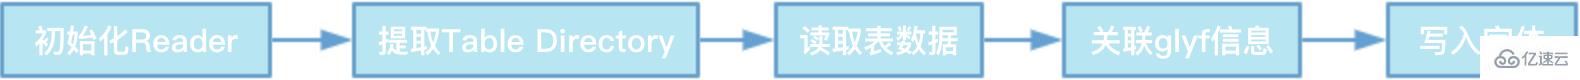 Web中文字体处理的方法有哪些